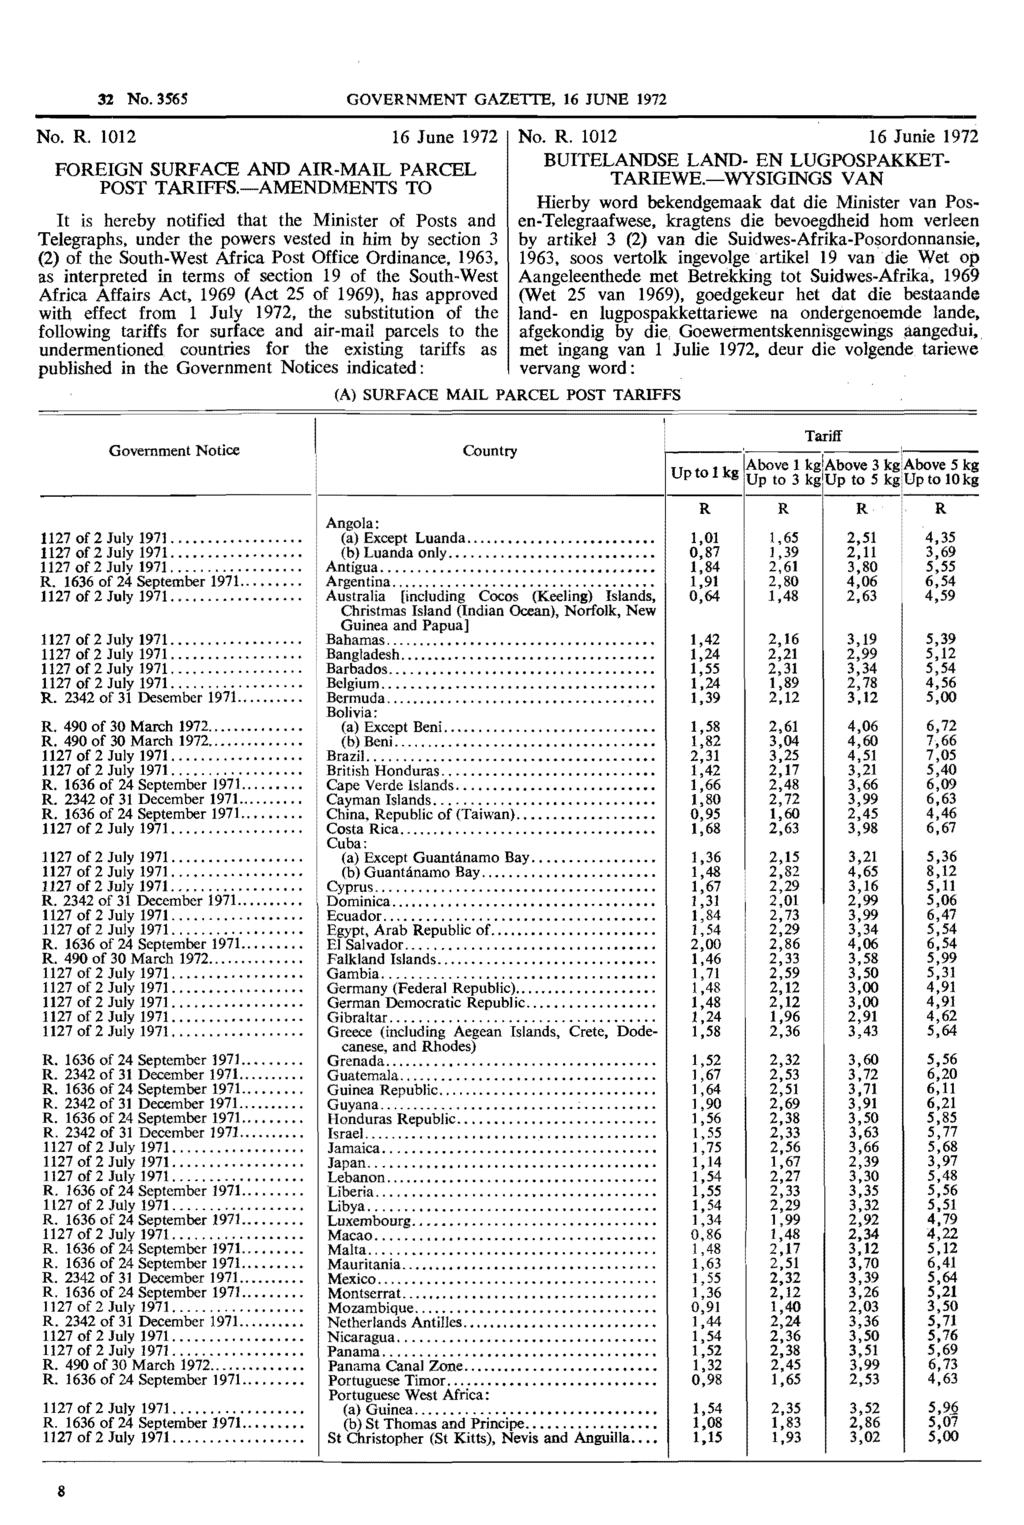 32 No. 3565 GOVERNMENT GAZETIE, 16 JUNE 1972 No. R. 1012 16 June 1972 No. R. 1012 16 Junie 1972 FOREIGN SURFACE AND AIR-MAIL PARCEL BUITELANDSE LAND- EN LUGPOSPAKKET POST TARIFFS.